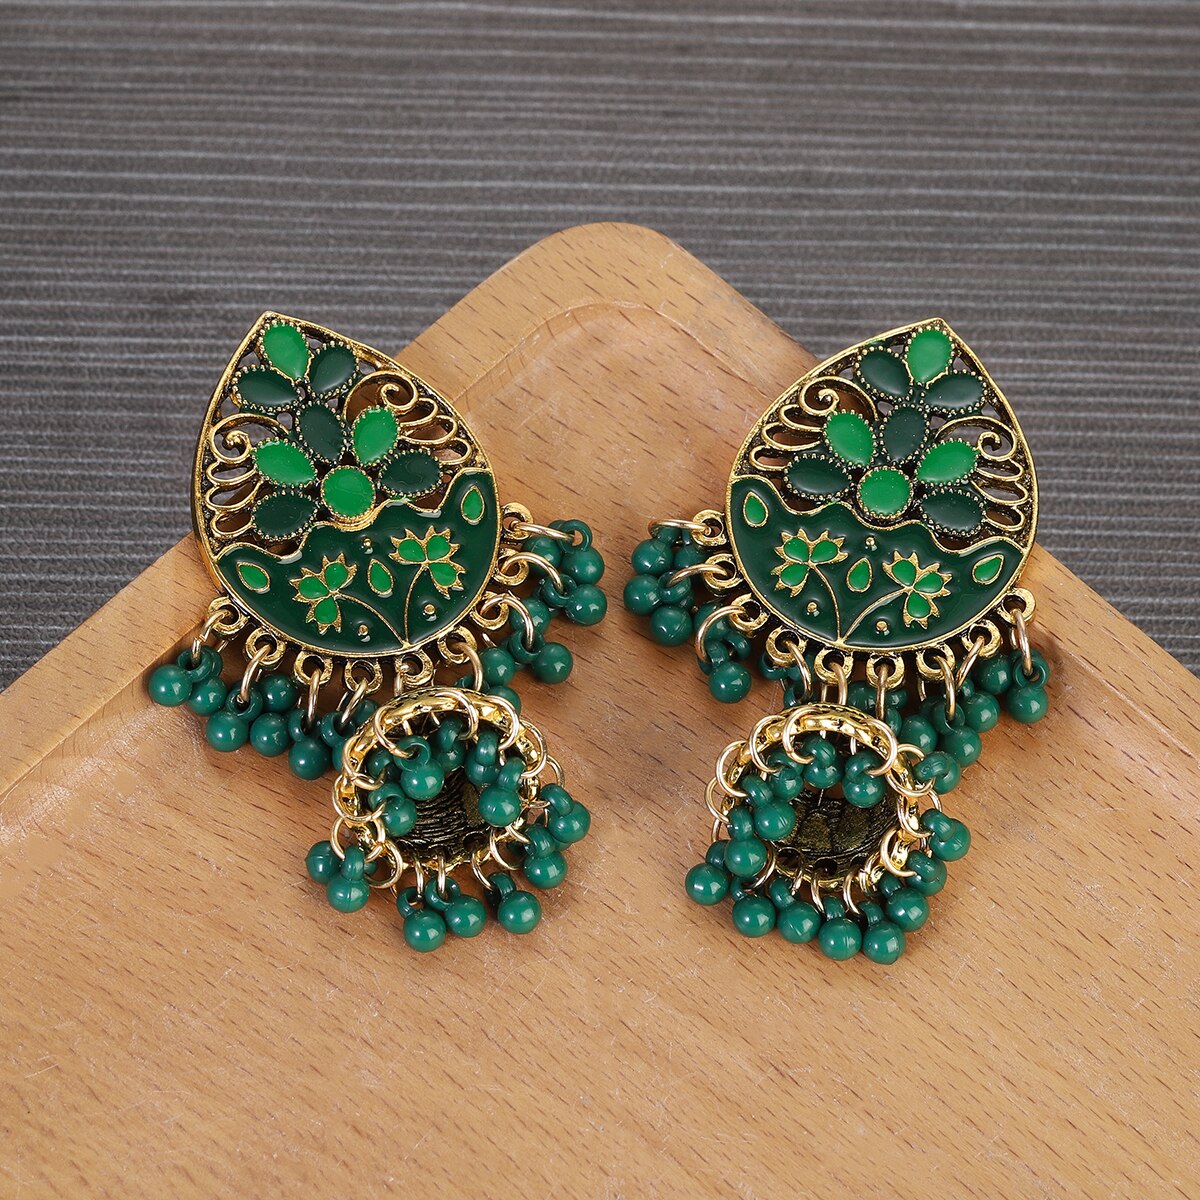 Vintage-Fashion-Water-Drop-Dangle-Earrings-for-Women-Ethnic-Indian-Jewelry-Blue-Flower-Tassel-Dangli-3256804947025776-14